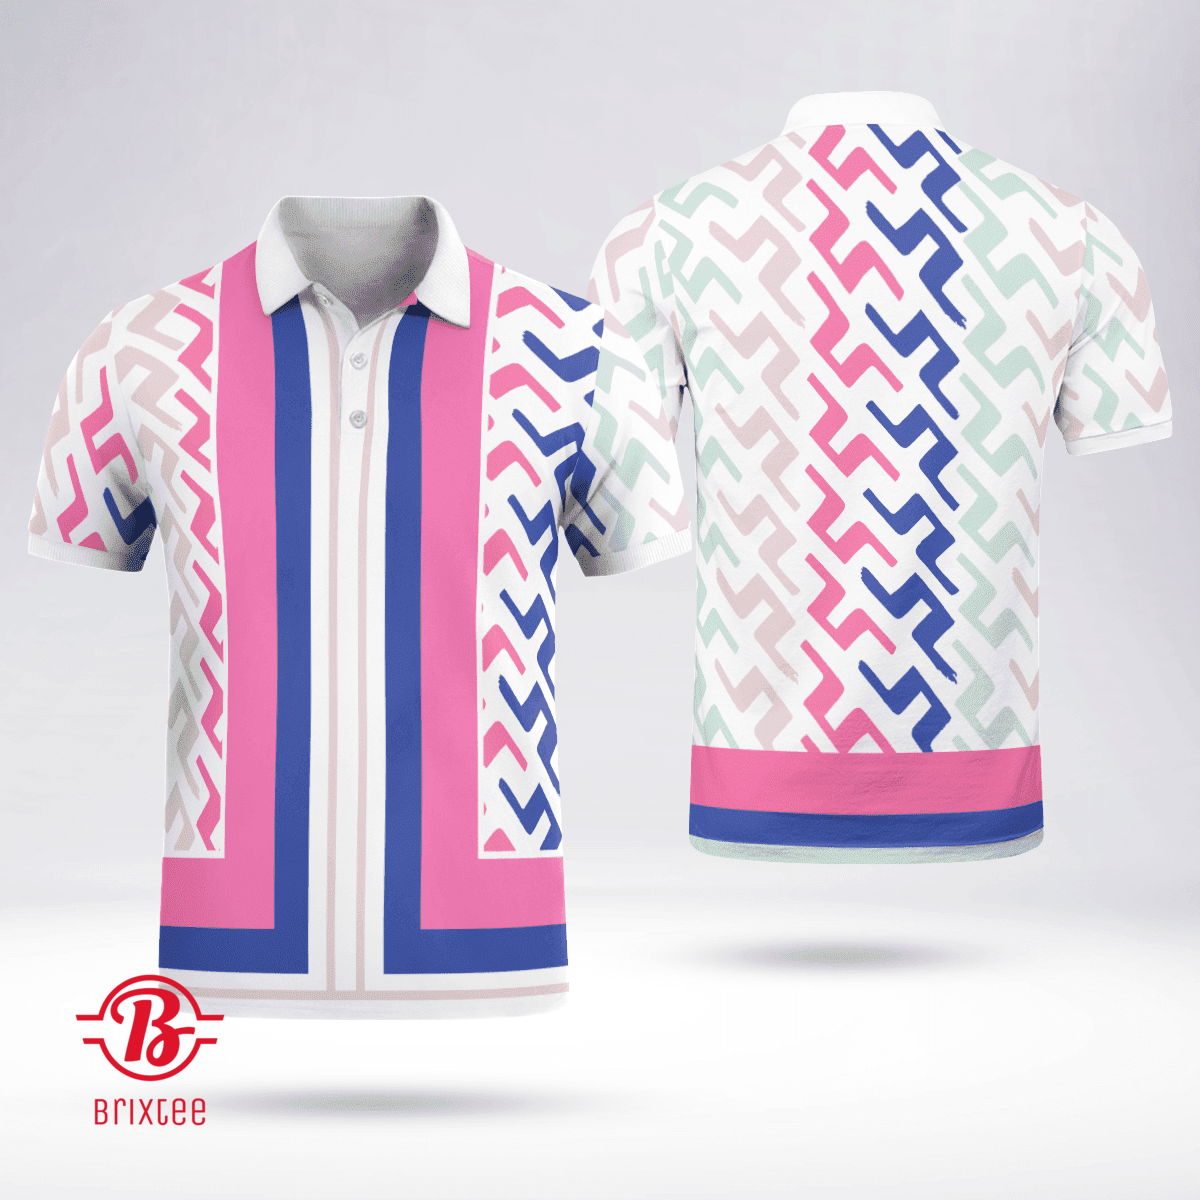 Viktor Hovland J.Lindeberg Golf Polo Shirt - Special Tour Tech Print - Pink